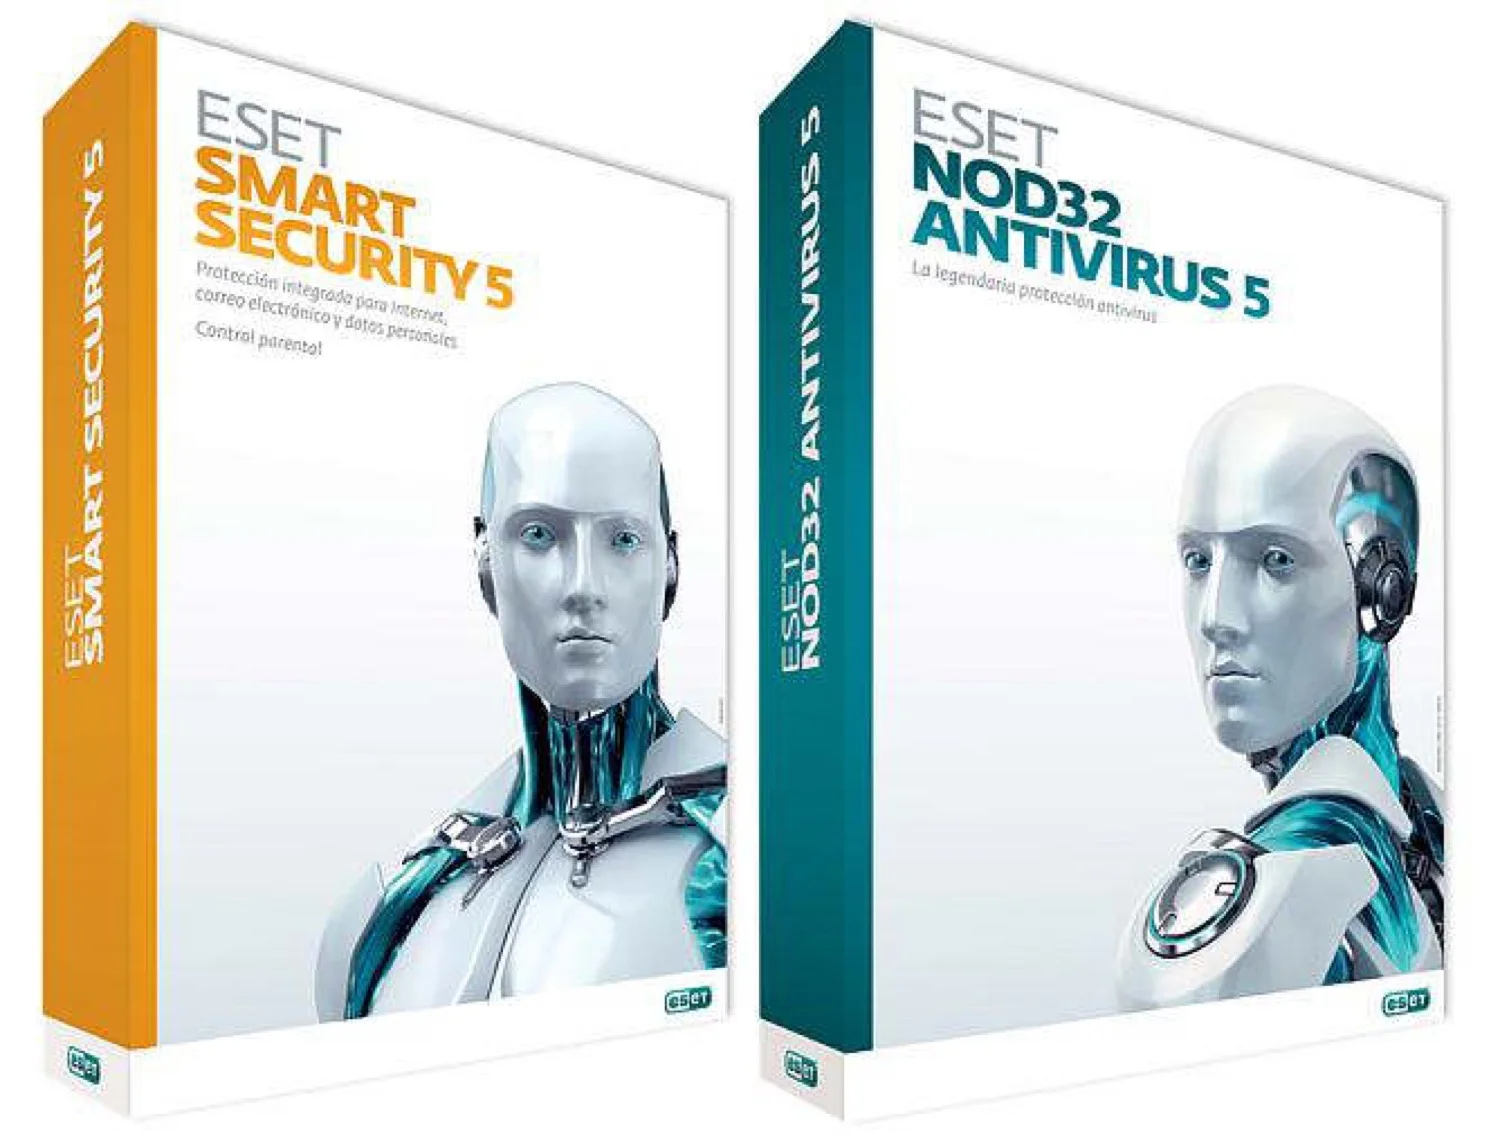 Reseña del ESET Smart Security 5